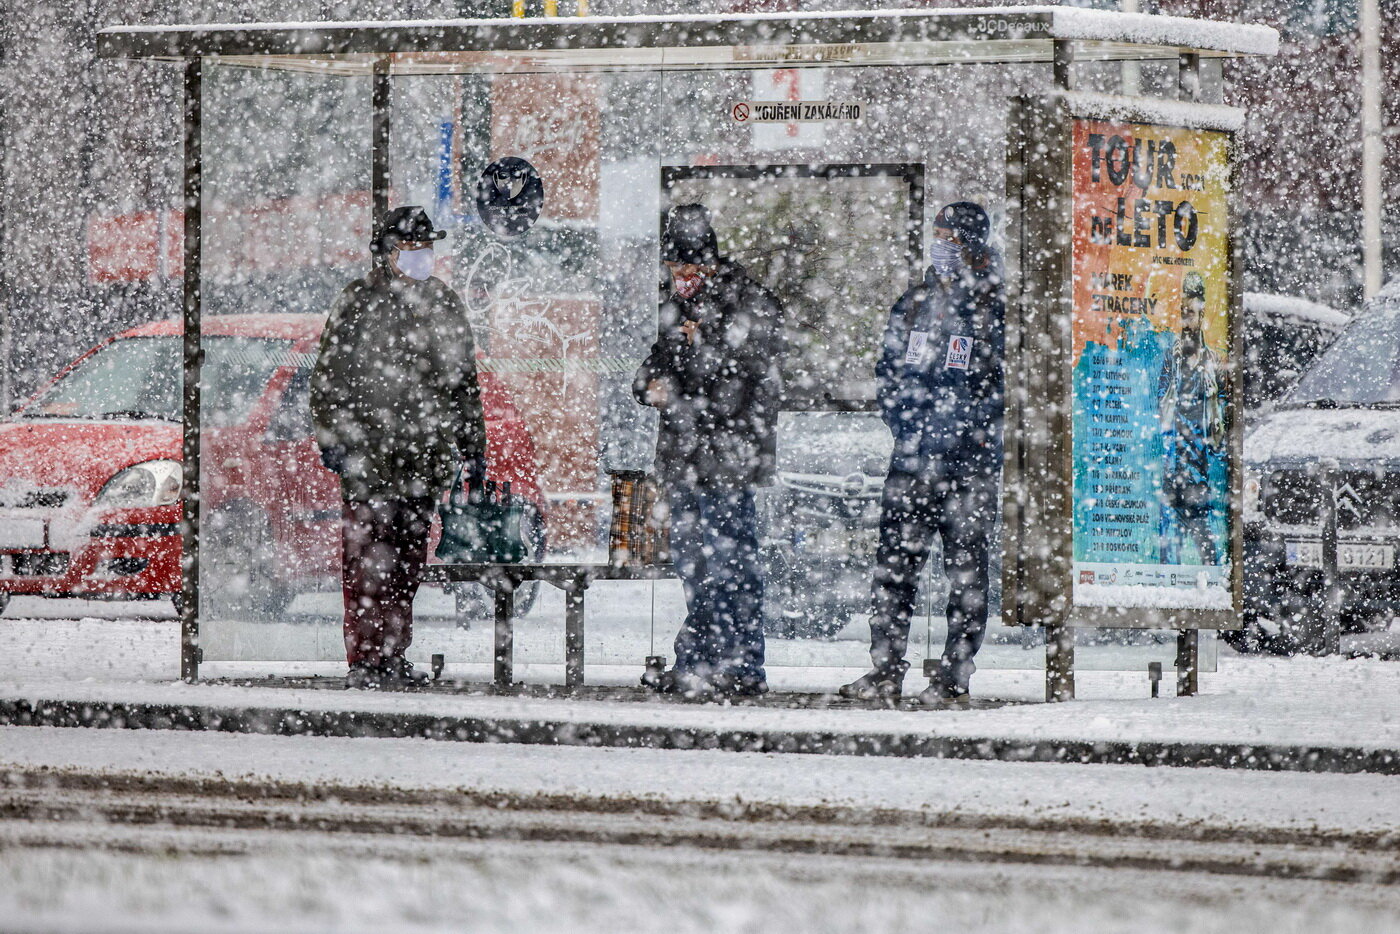 meteorologové varovali před sněžením během večera a v průběhu úterý